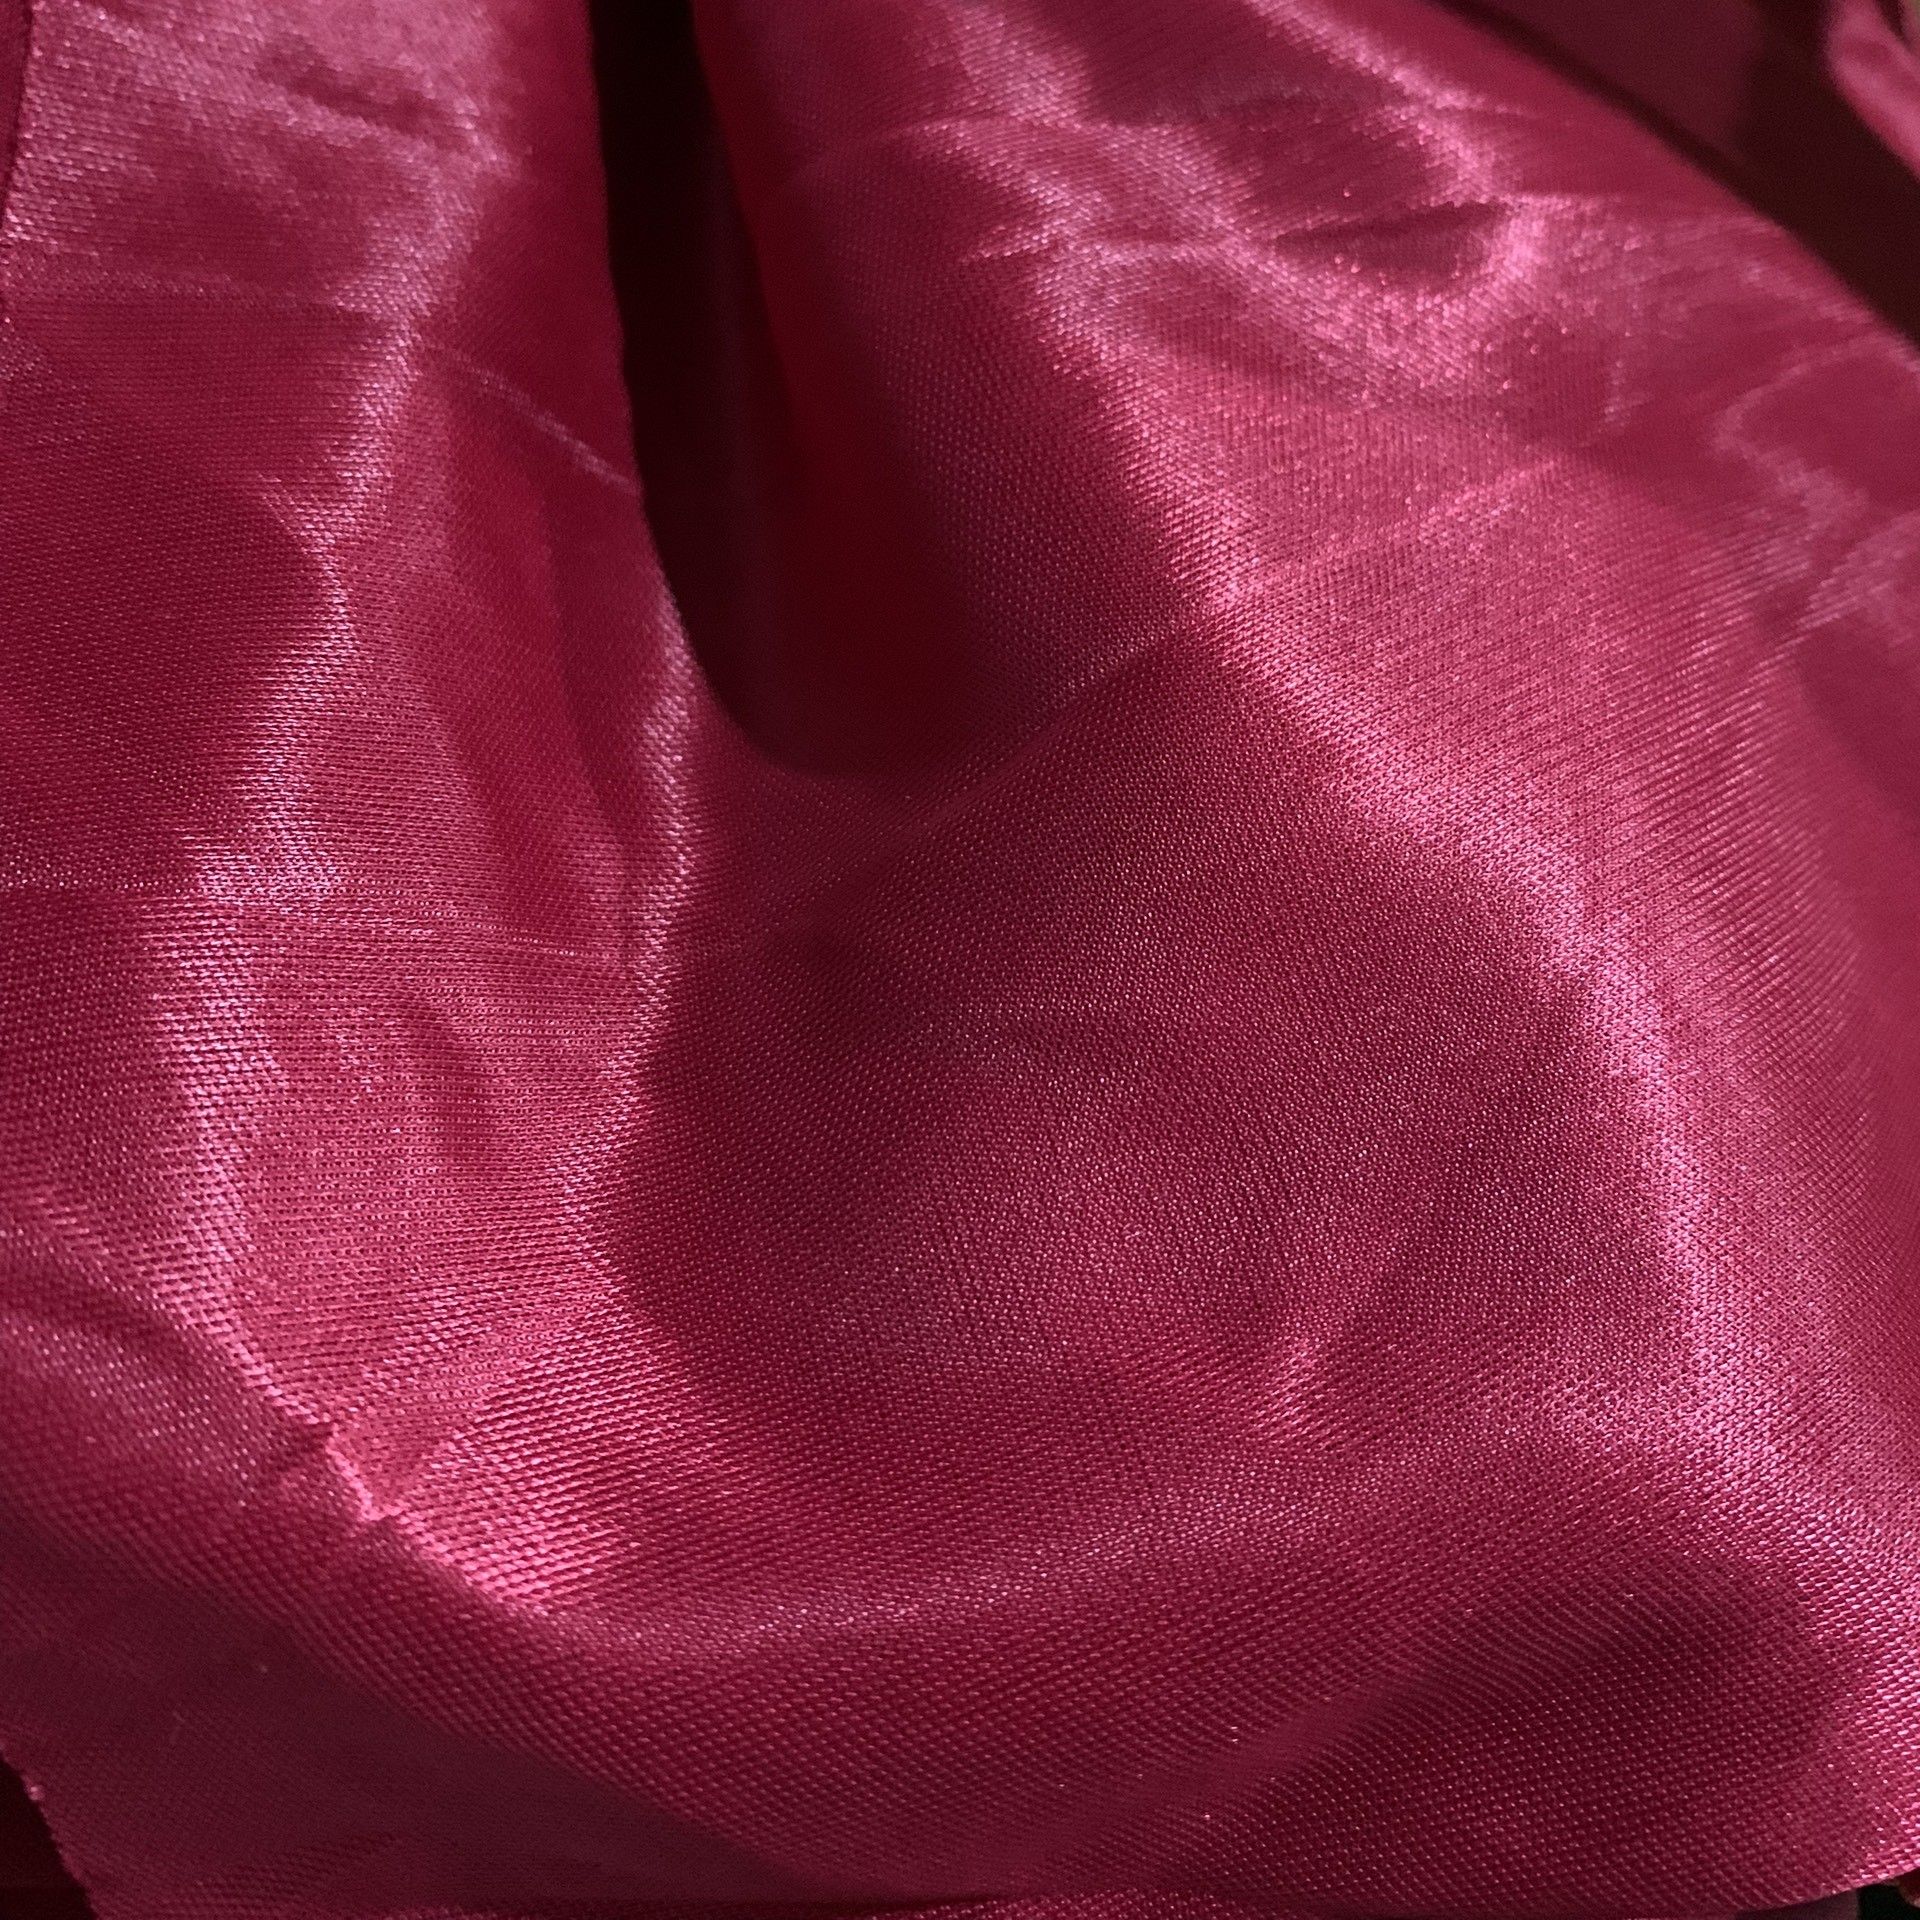  Vải thun Dai trơn lạnh Khổ 150 - Thun Khăn bàn - Thun Gia chánh BMT 